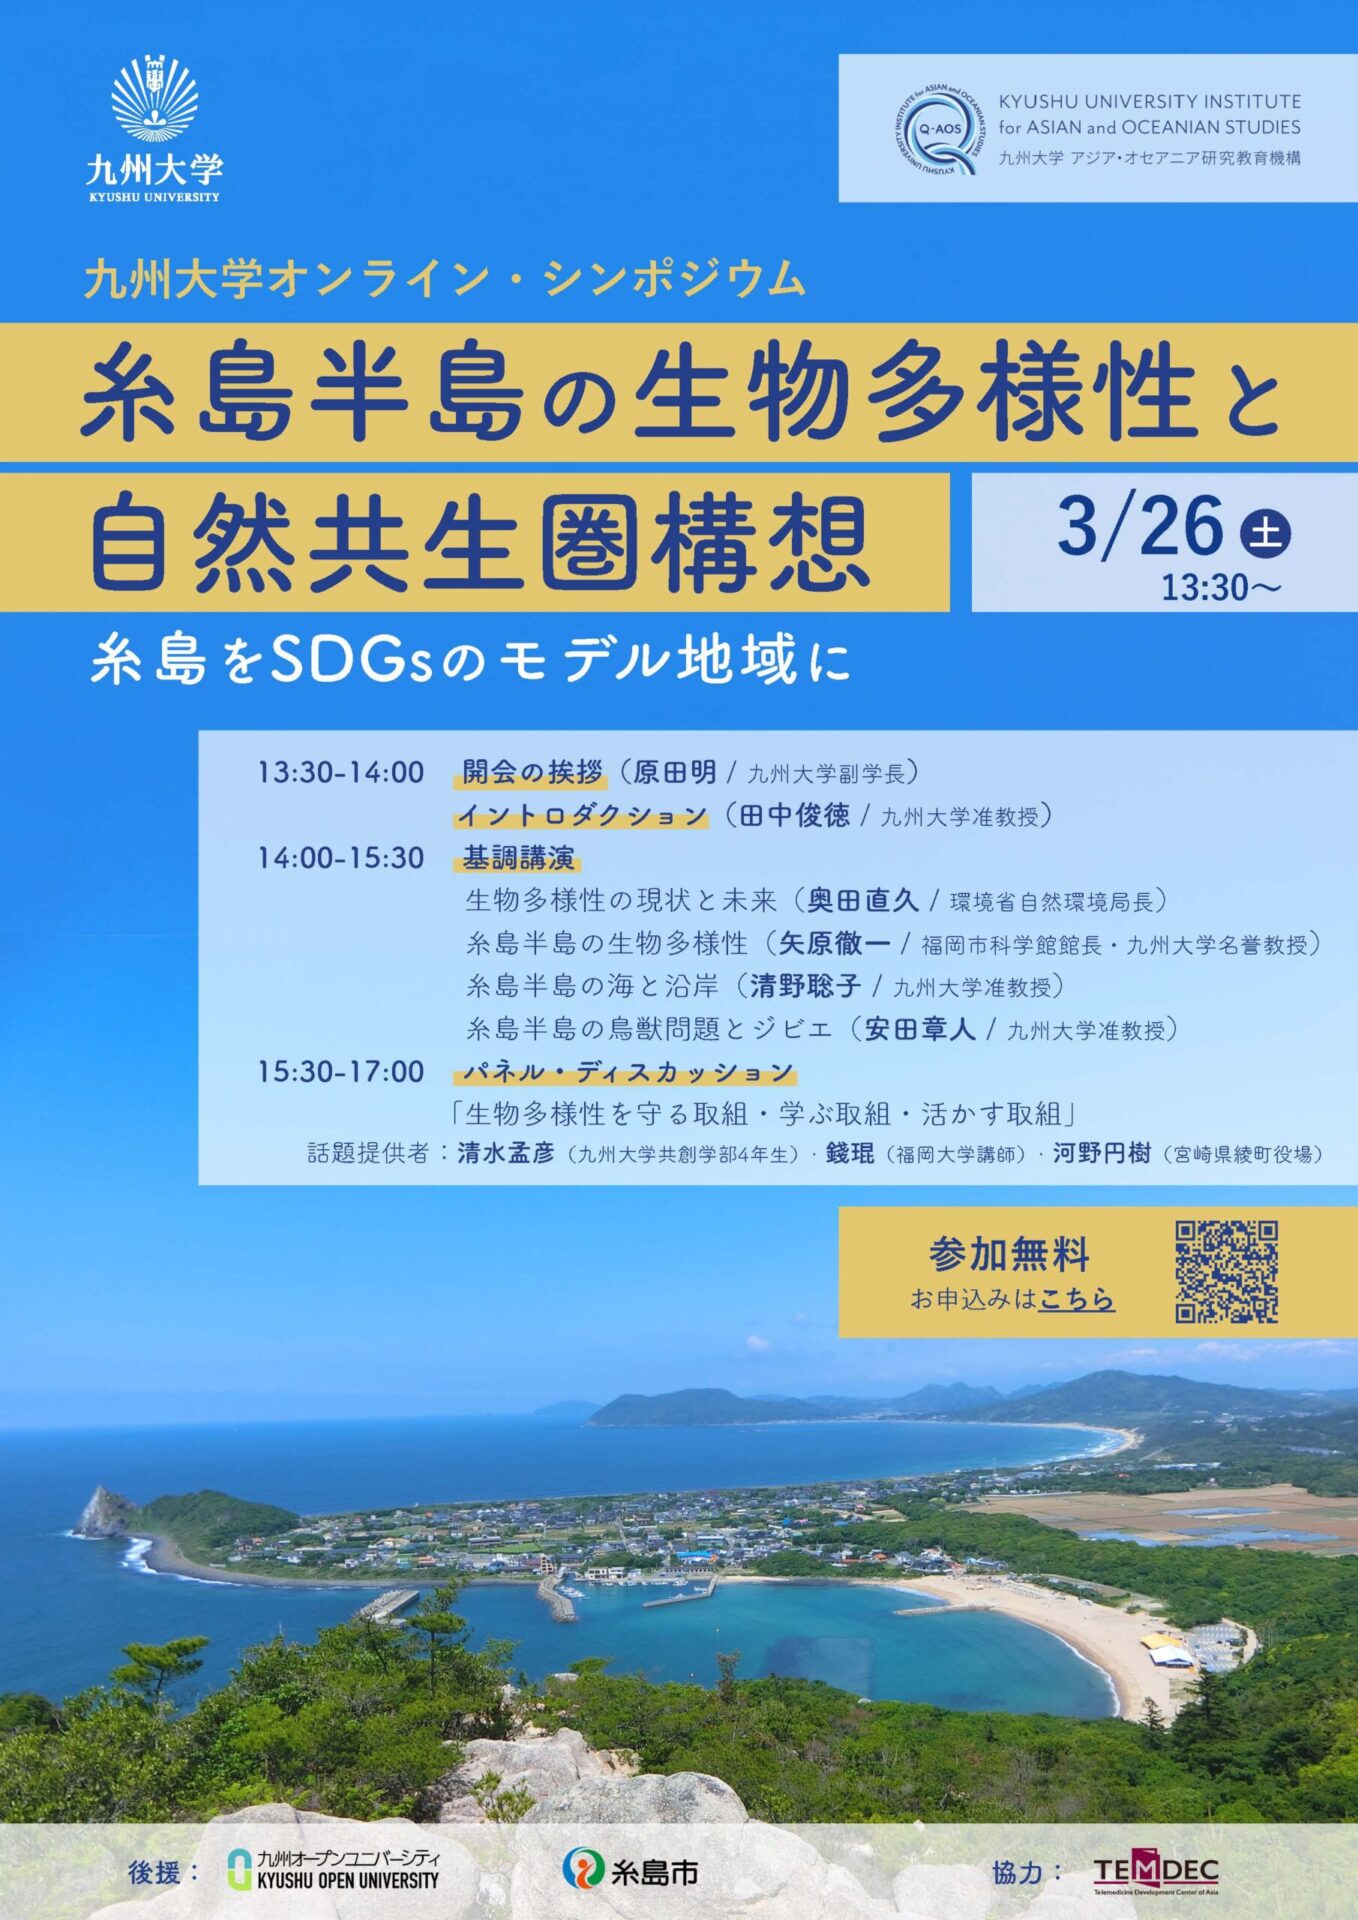 アイキャッチ画像：【オンラインシンポジウム】「糸島半島の生物多様性と自然共生圏構想～糸島をSDGsのモデル地域に～」